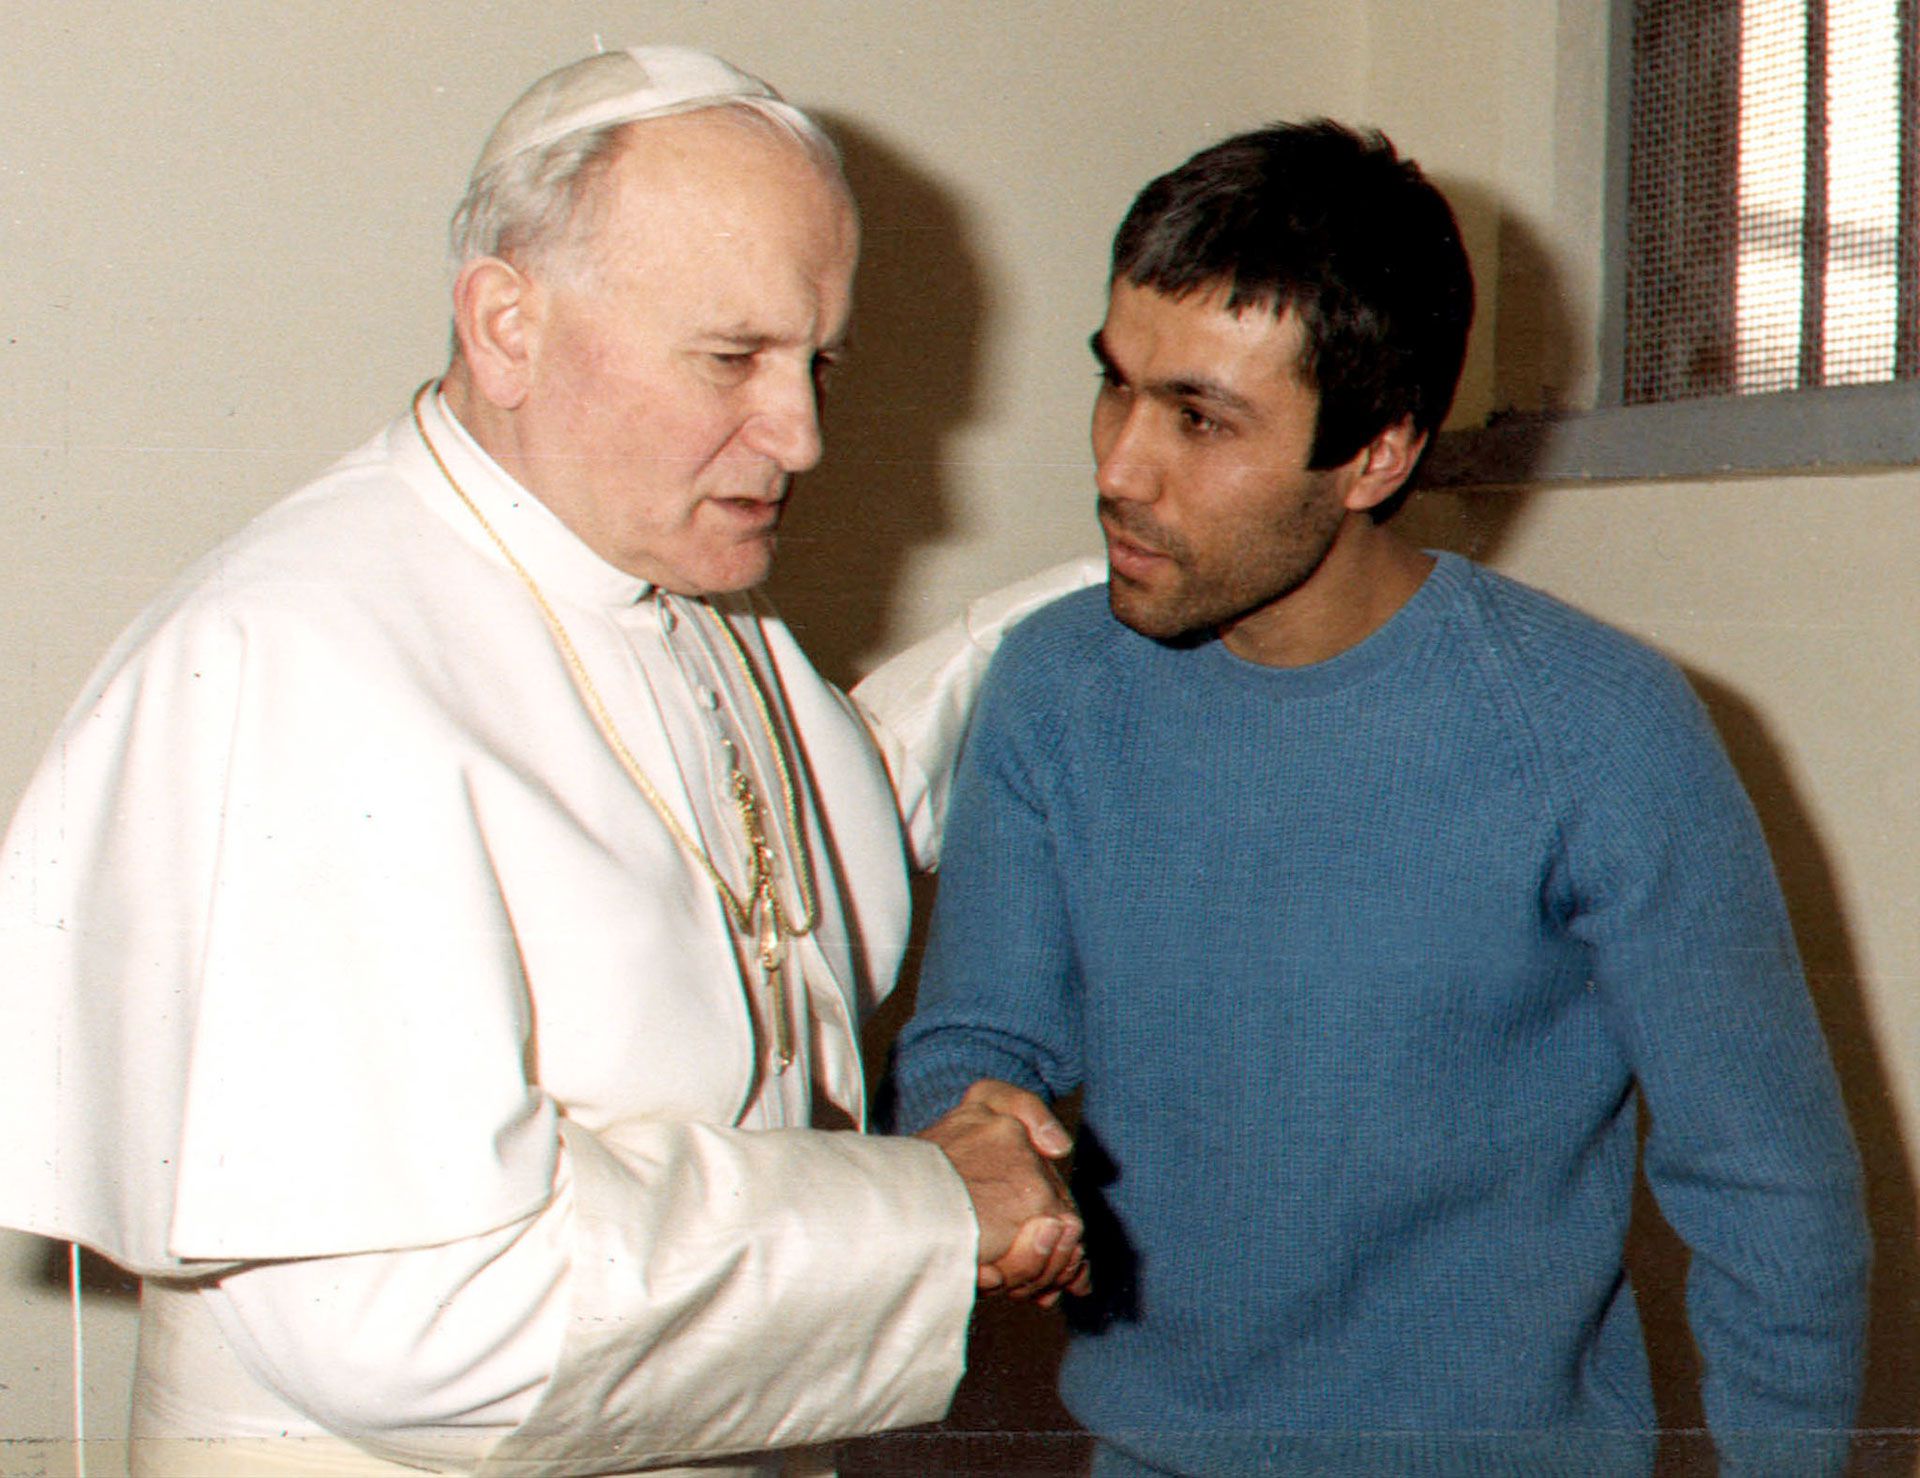 Juan Pablo II visitó en su celda a Agca, lo escuchó y lo perdonó. Décadas después Agca dijo que intentó obtener la ciudadanía polaca como homenaje al Papa